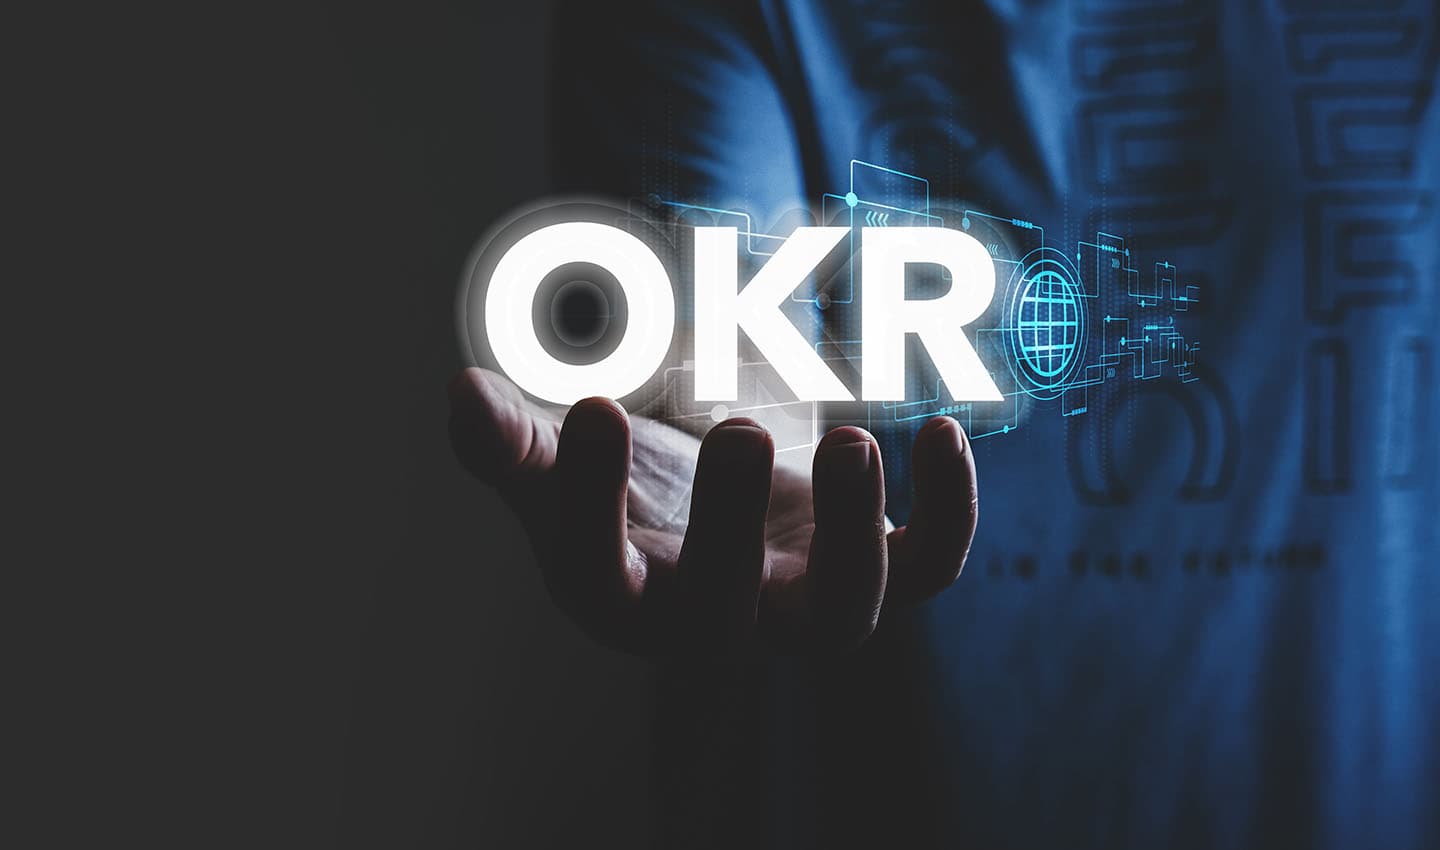 Ziele setzen und erreichen mit der Open-Source-Software für OKRs (Objectives and Key Results)